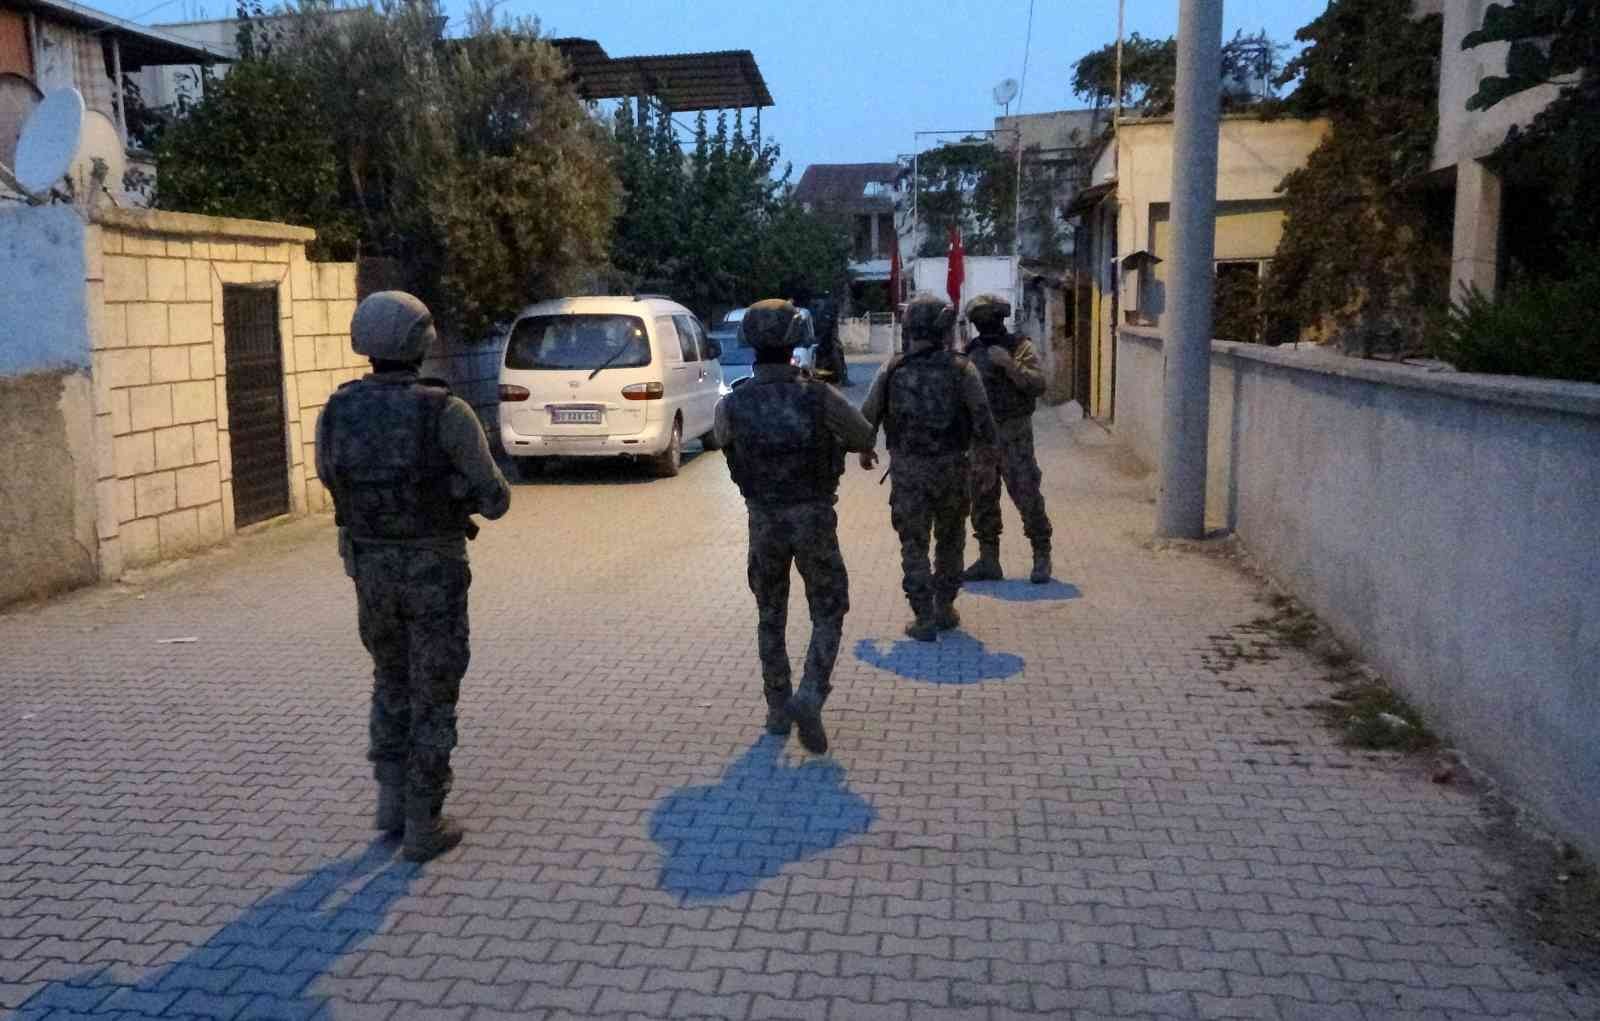 Osmaniye’de özel harekat destekli narkotik operasyonu #osmaniye